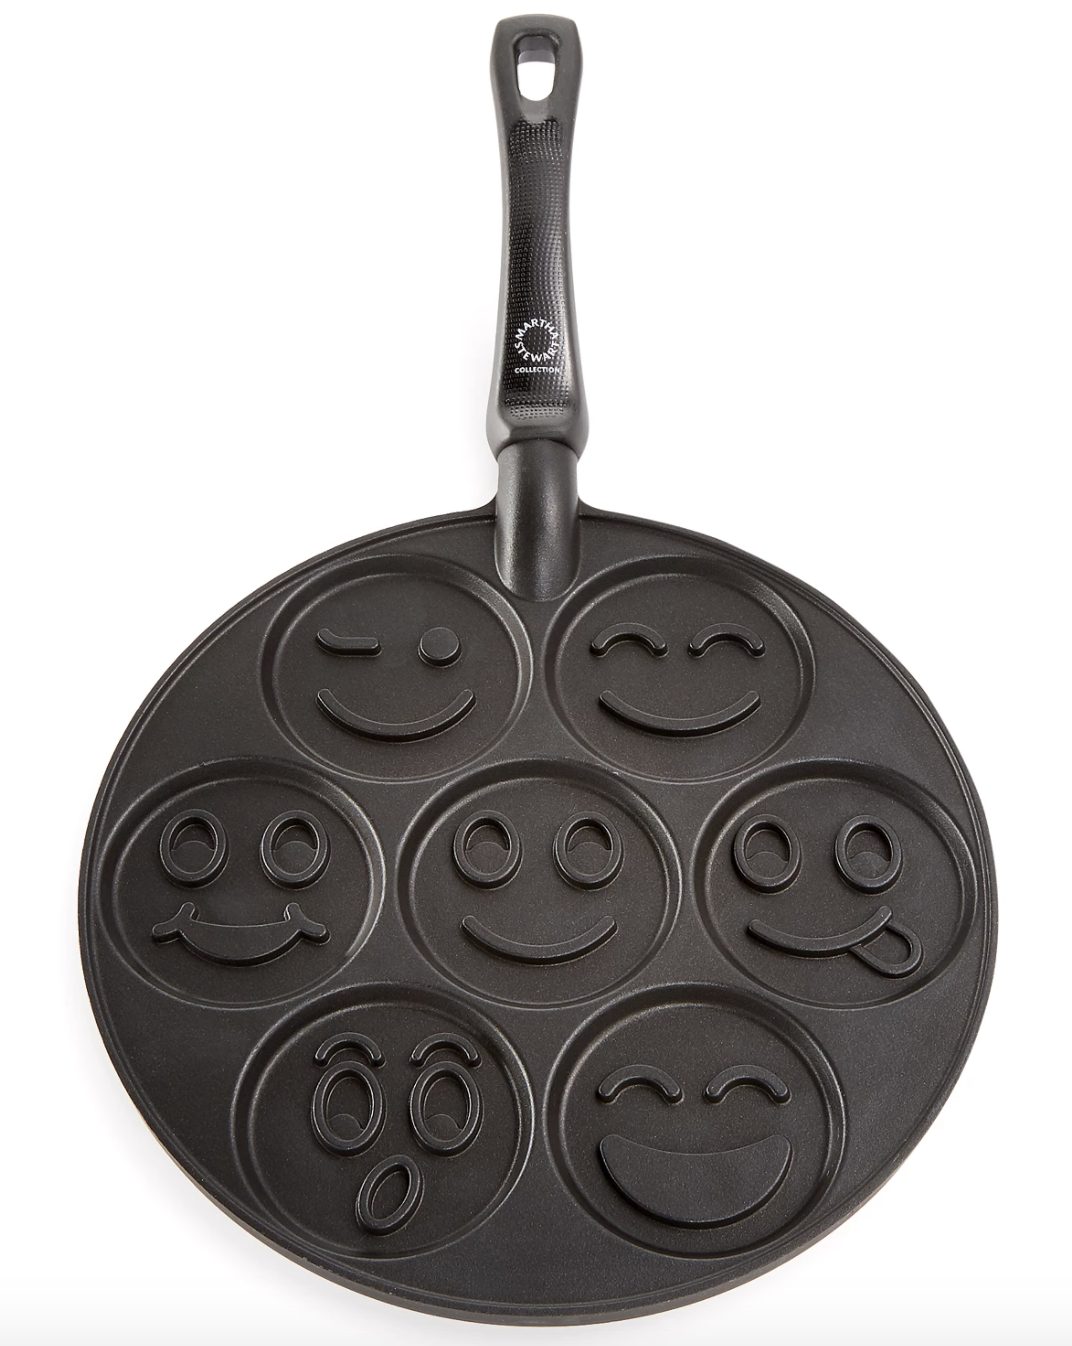 smiley face pancake pan